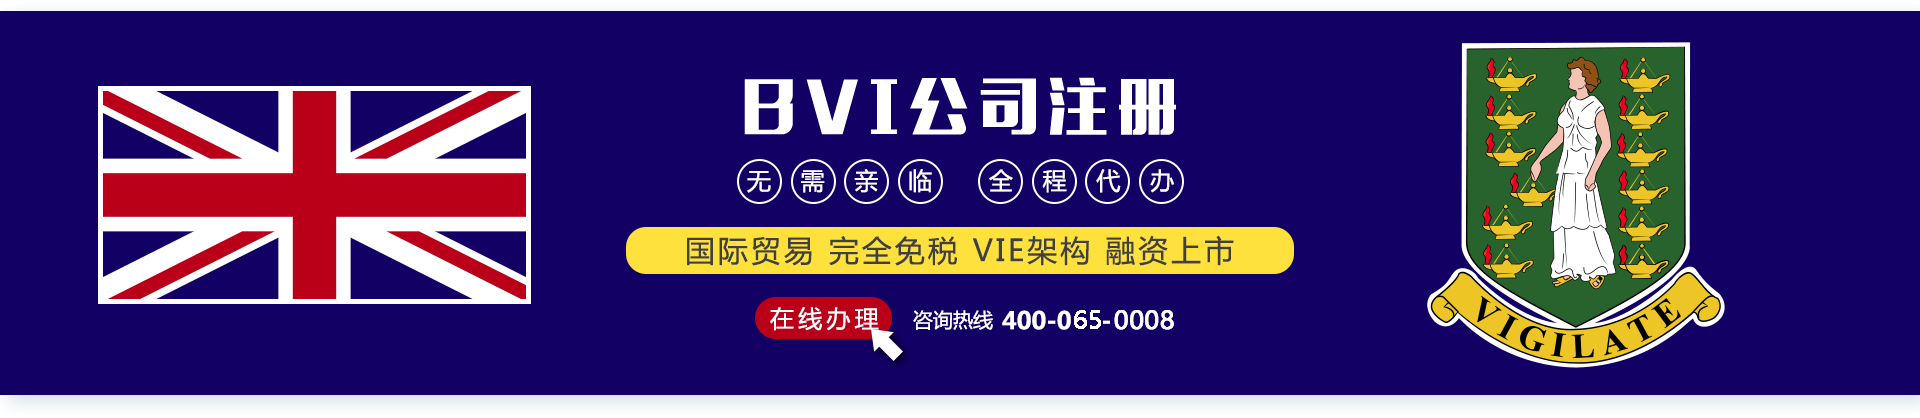 注册BVI公司